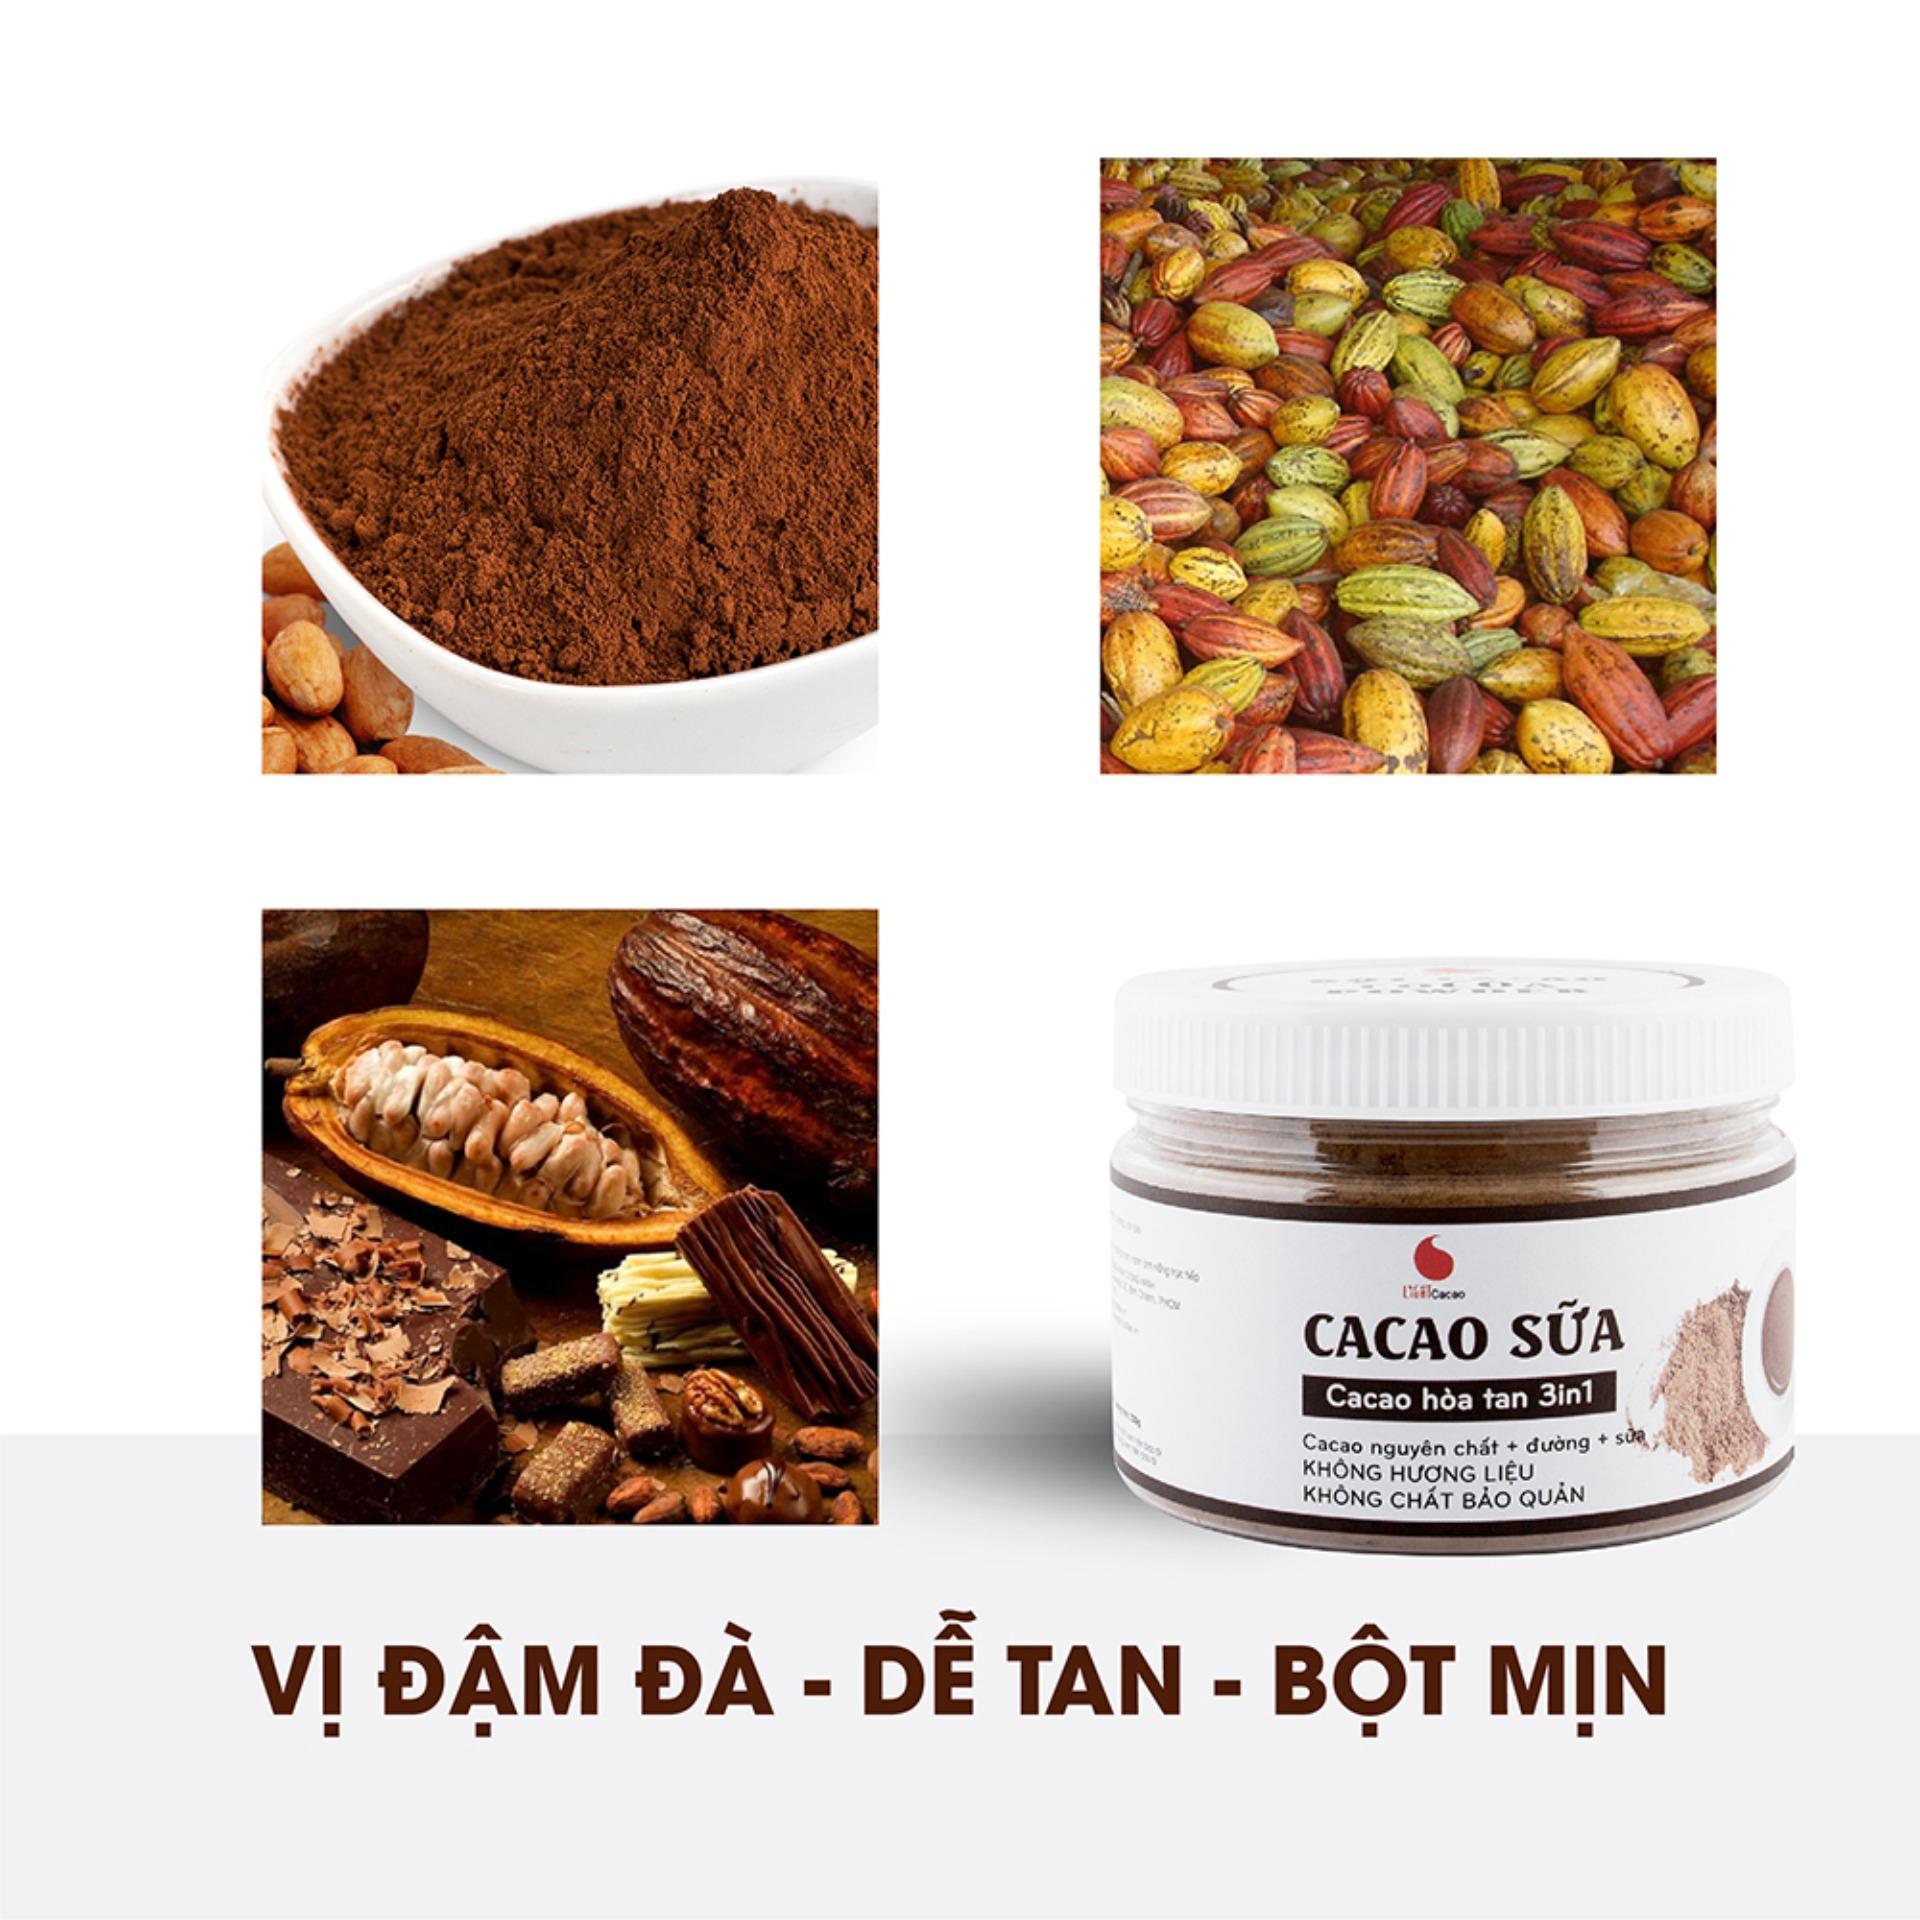 [MÃ GIẢM 20K] Bột cacao sữa hòa tan 3 in 1 Light Cacao đậm đà thơm ngon , đặc biệt...